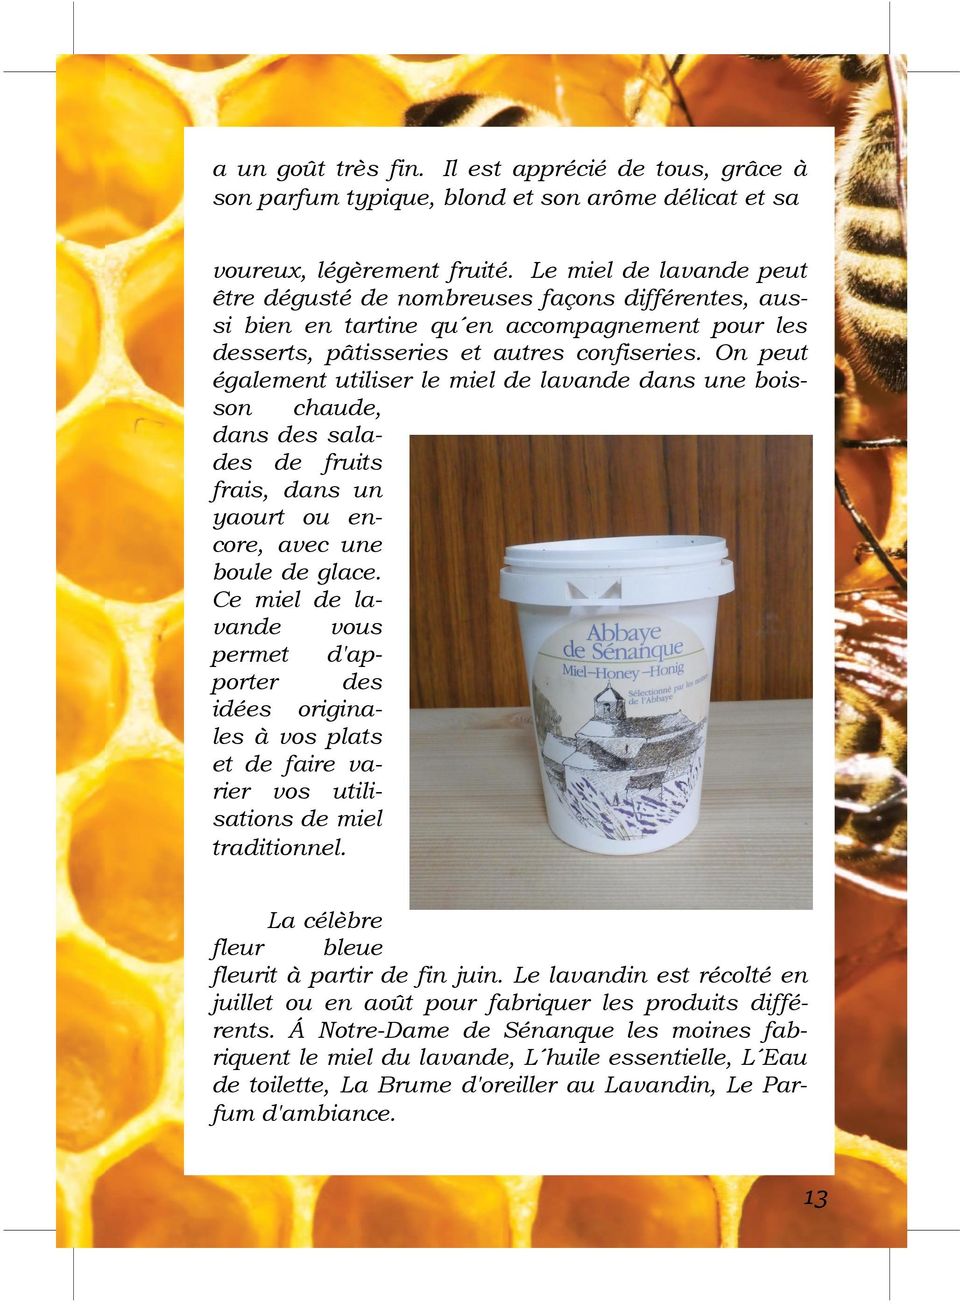 On peut également utiliser le miel de lavande dans une boisson chaude, dans des salades de fruits frais, dans un yaourt ou encore, avec une boule de glace.